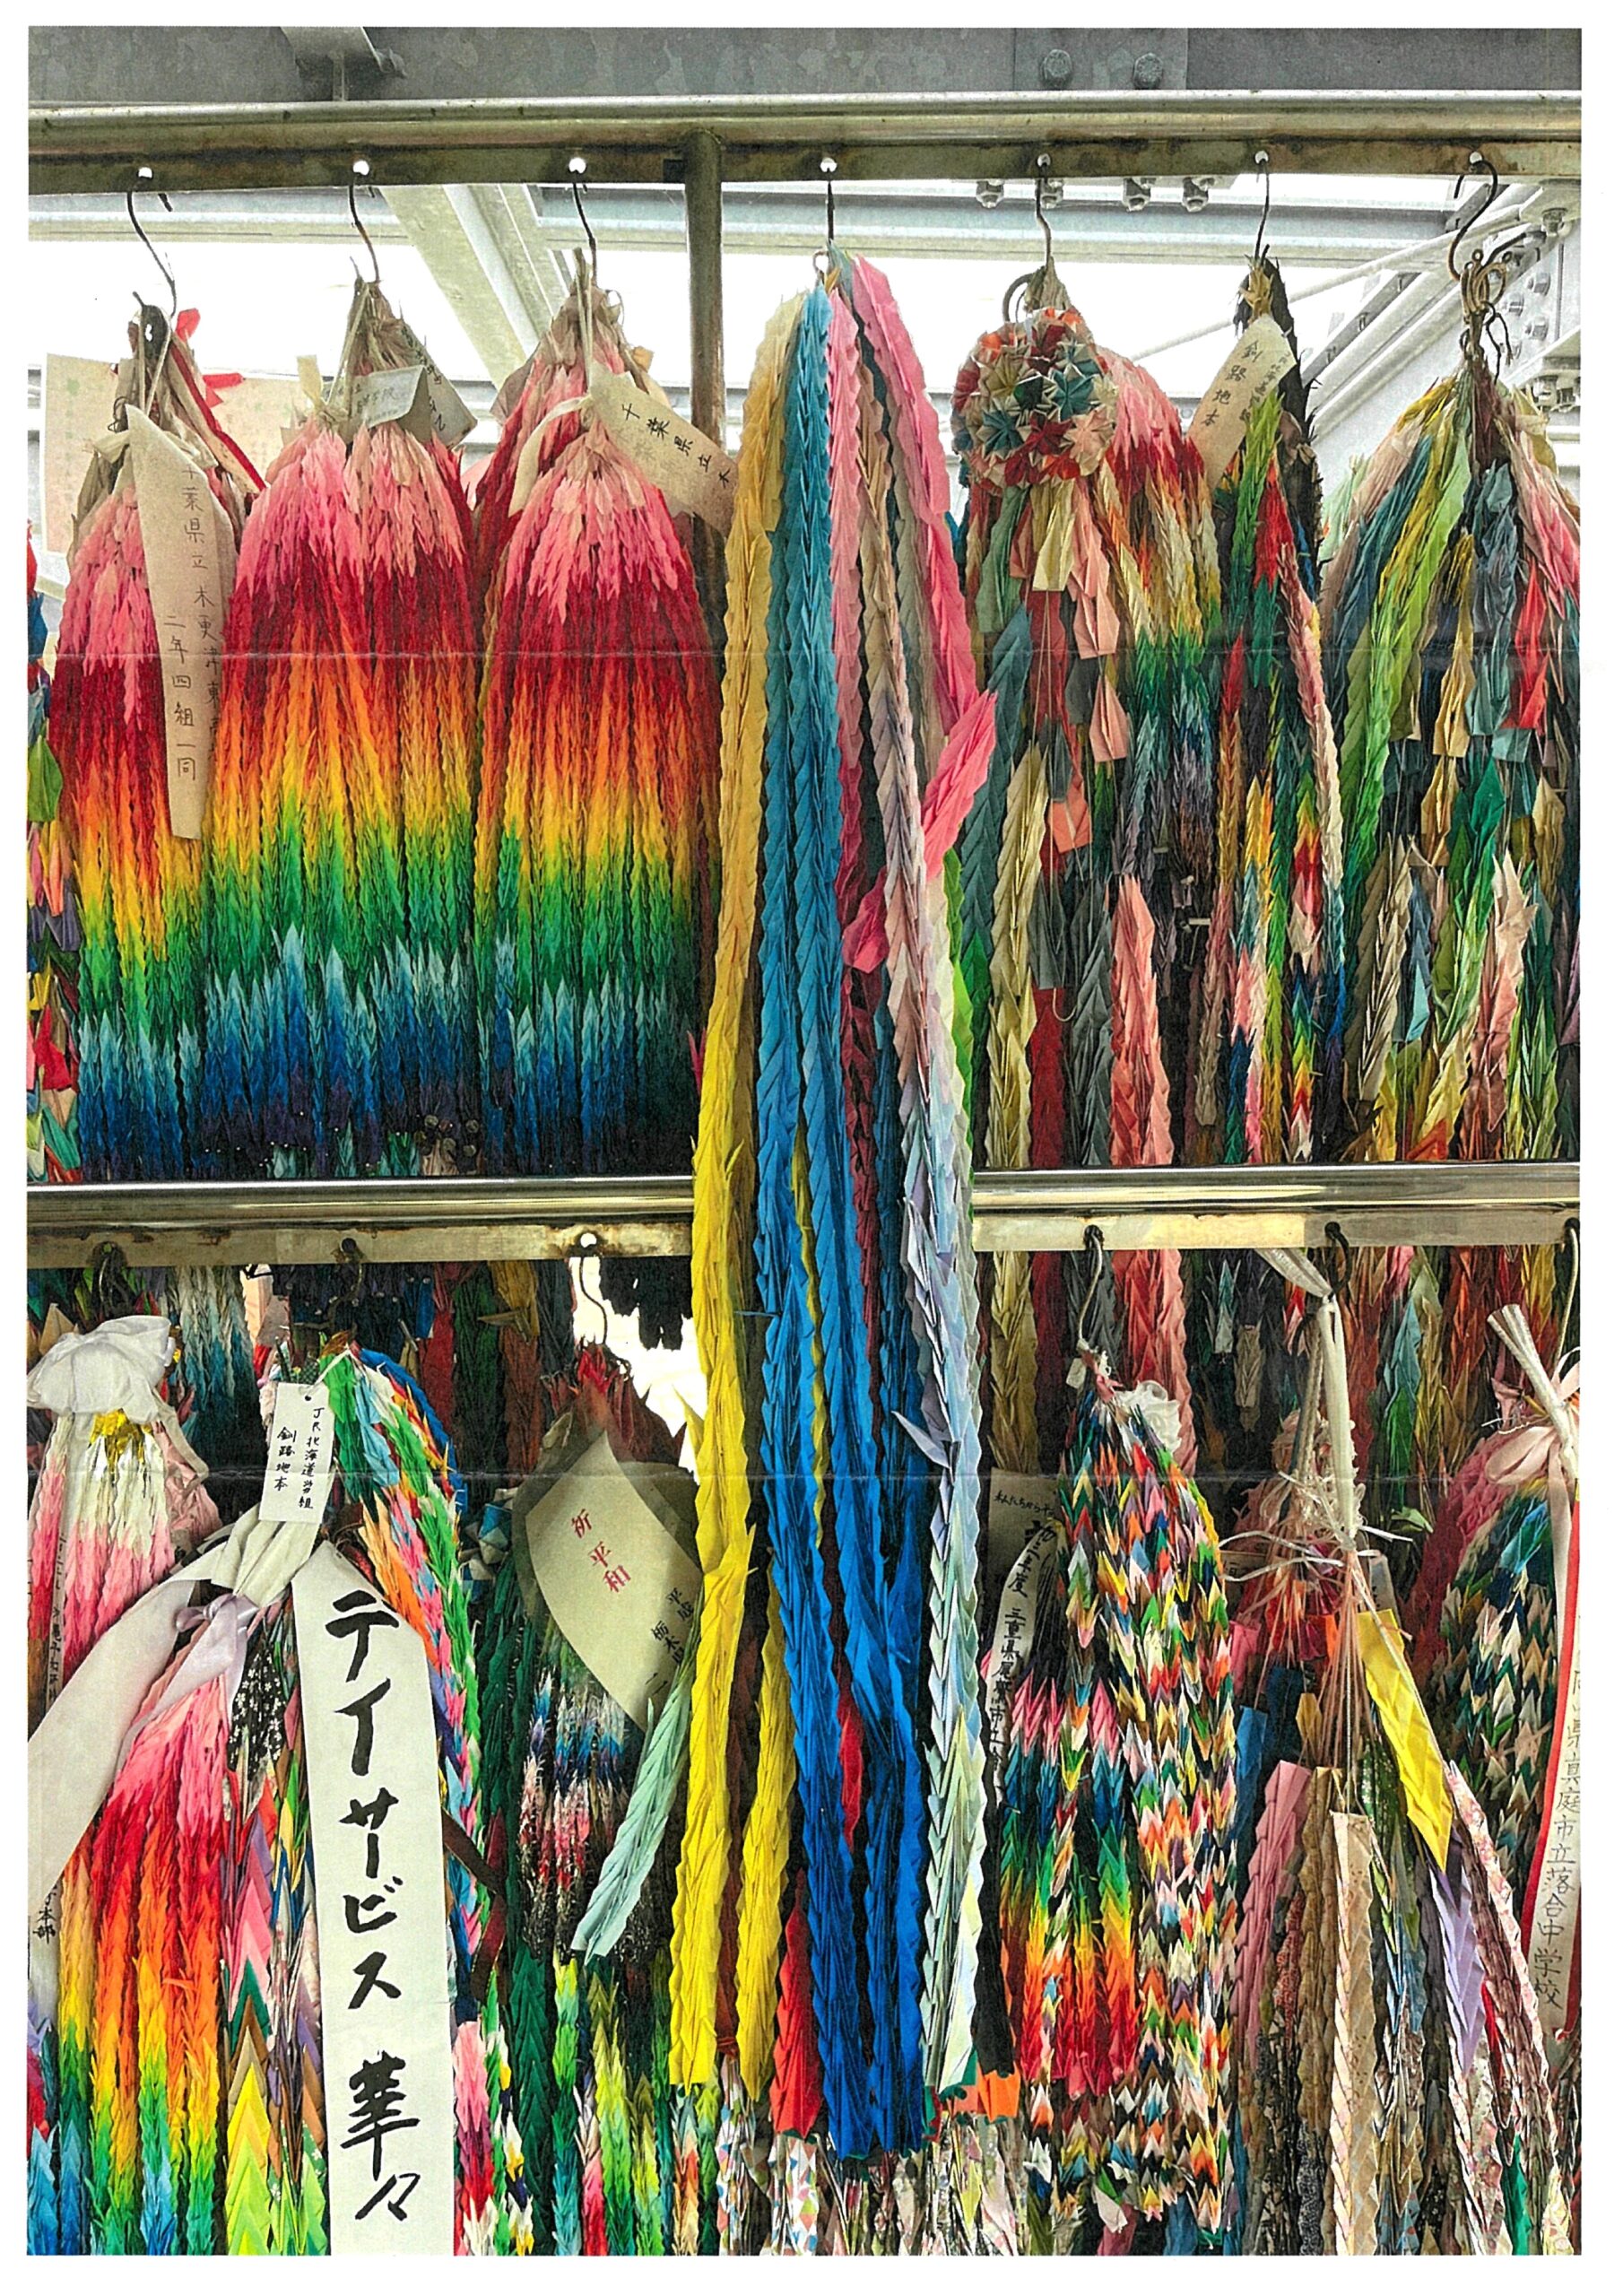 修学旅行で訪れたひめゆり平和祈念資料館に千羽鶴を届けました❗️